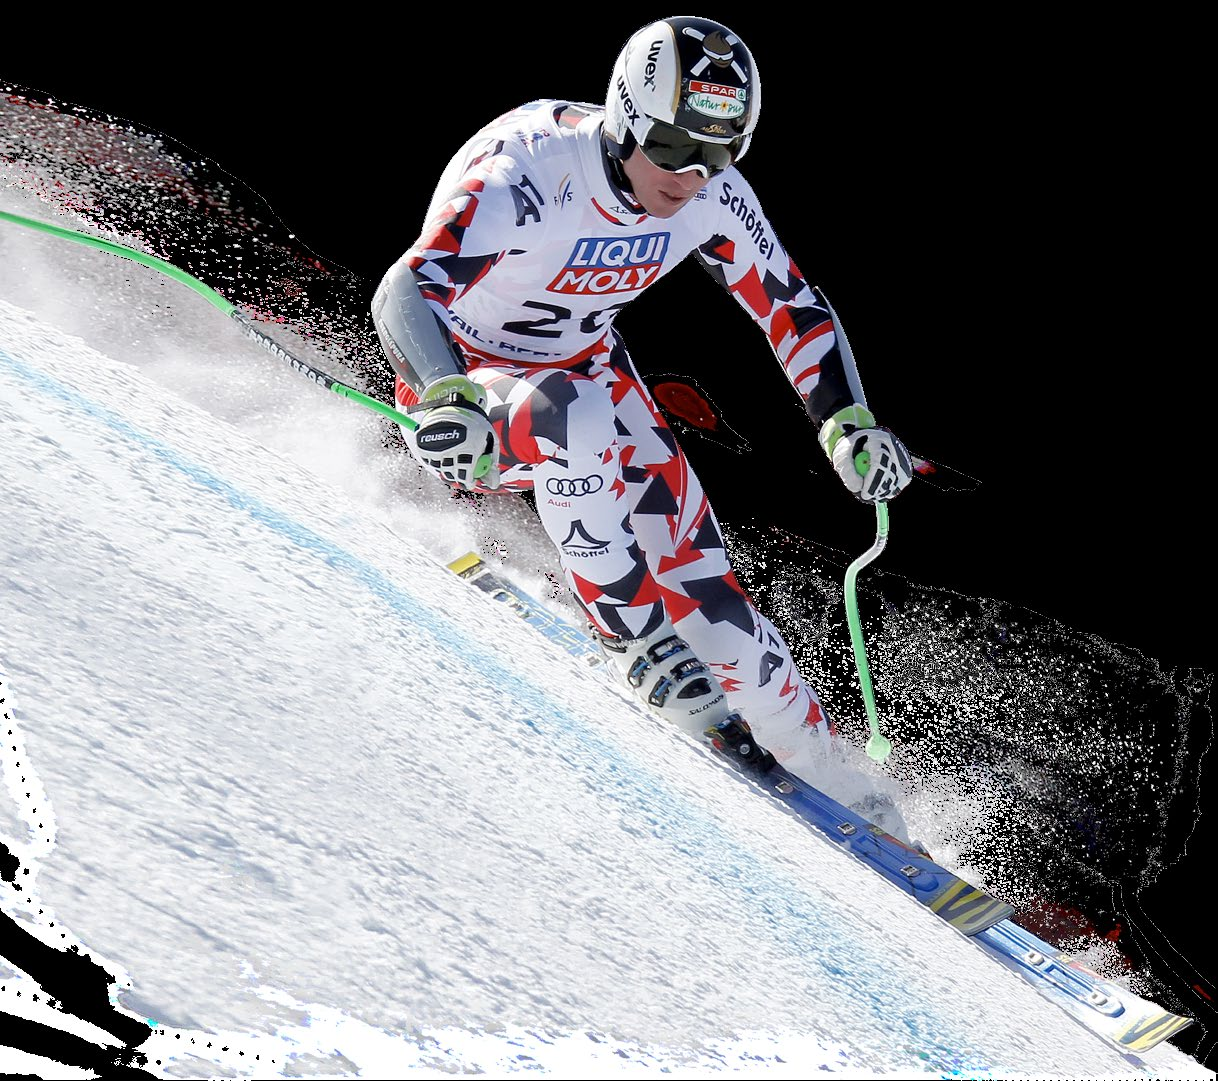 Zawodnicy, trenerzy, Pragniemy Was poinformować, że w nadchodzącym sezonie Ski Race Center oraz Firma Windsport będzie obsługiwała zamówienia sprzętu narciarskiego dla klubów i sekcji narciarskich w